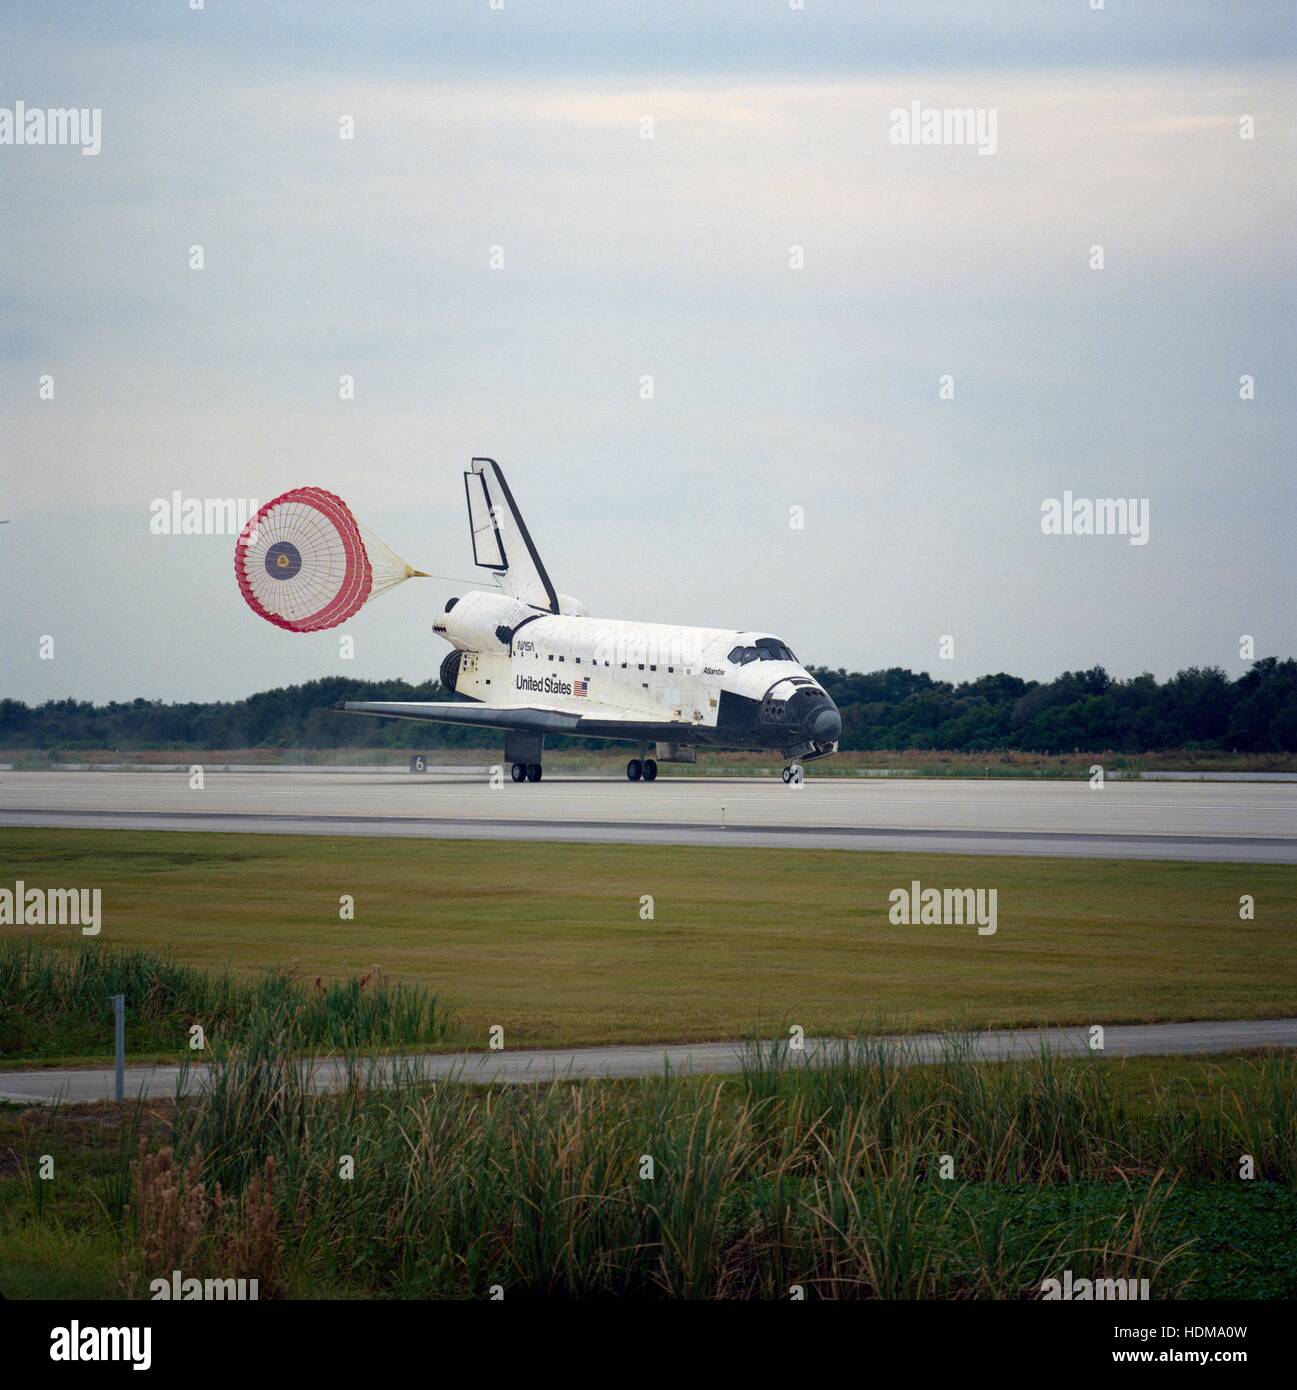 La NASA Navette spatiale Atlantis atterrit sur la piste au Centre spatial Kennedy Atterrissage à la fin de sa mission STS-74, le 20 novembre 1995 à Merritt Island, en Floride. Banque D'Images